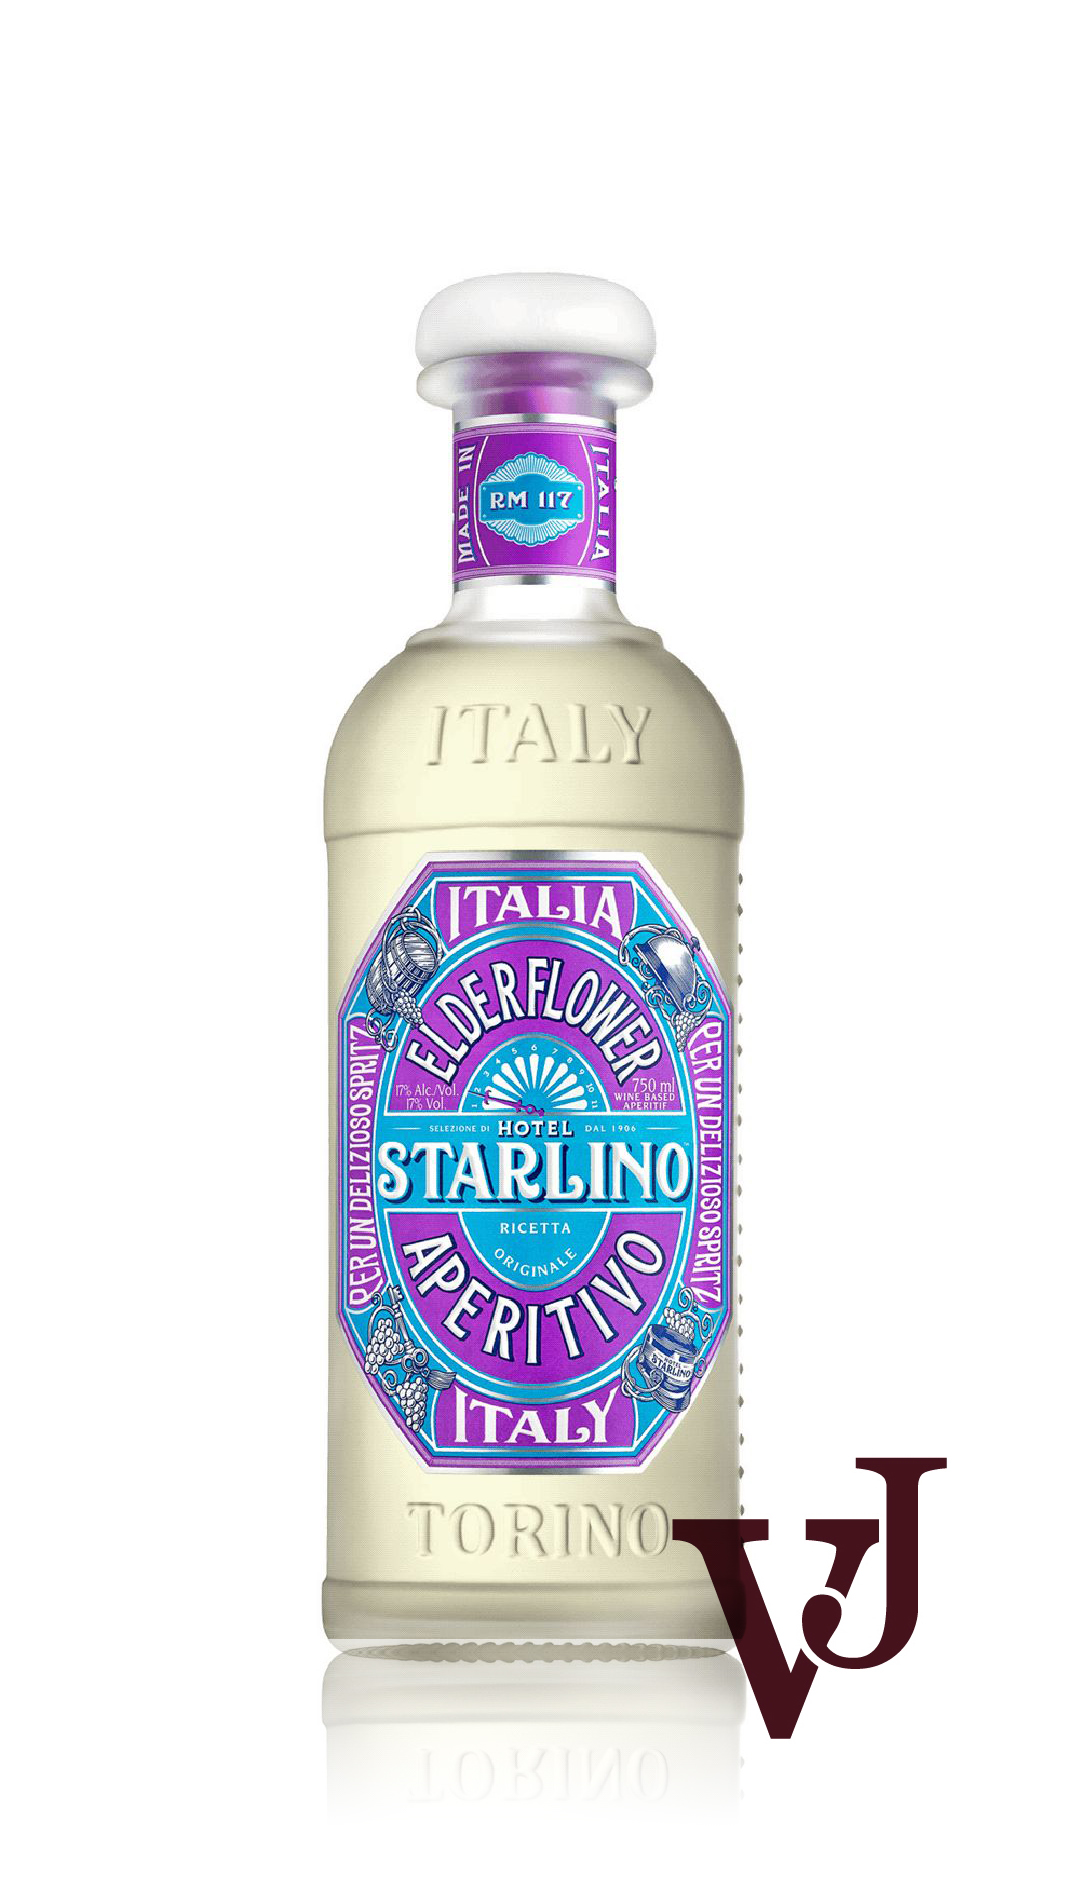 Aperitifer - Hotel Starlino artikel nummer 5719901 från producenten Torini Distillati från området Italien